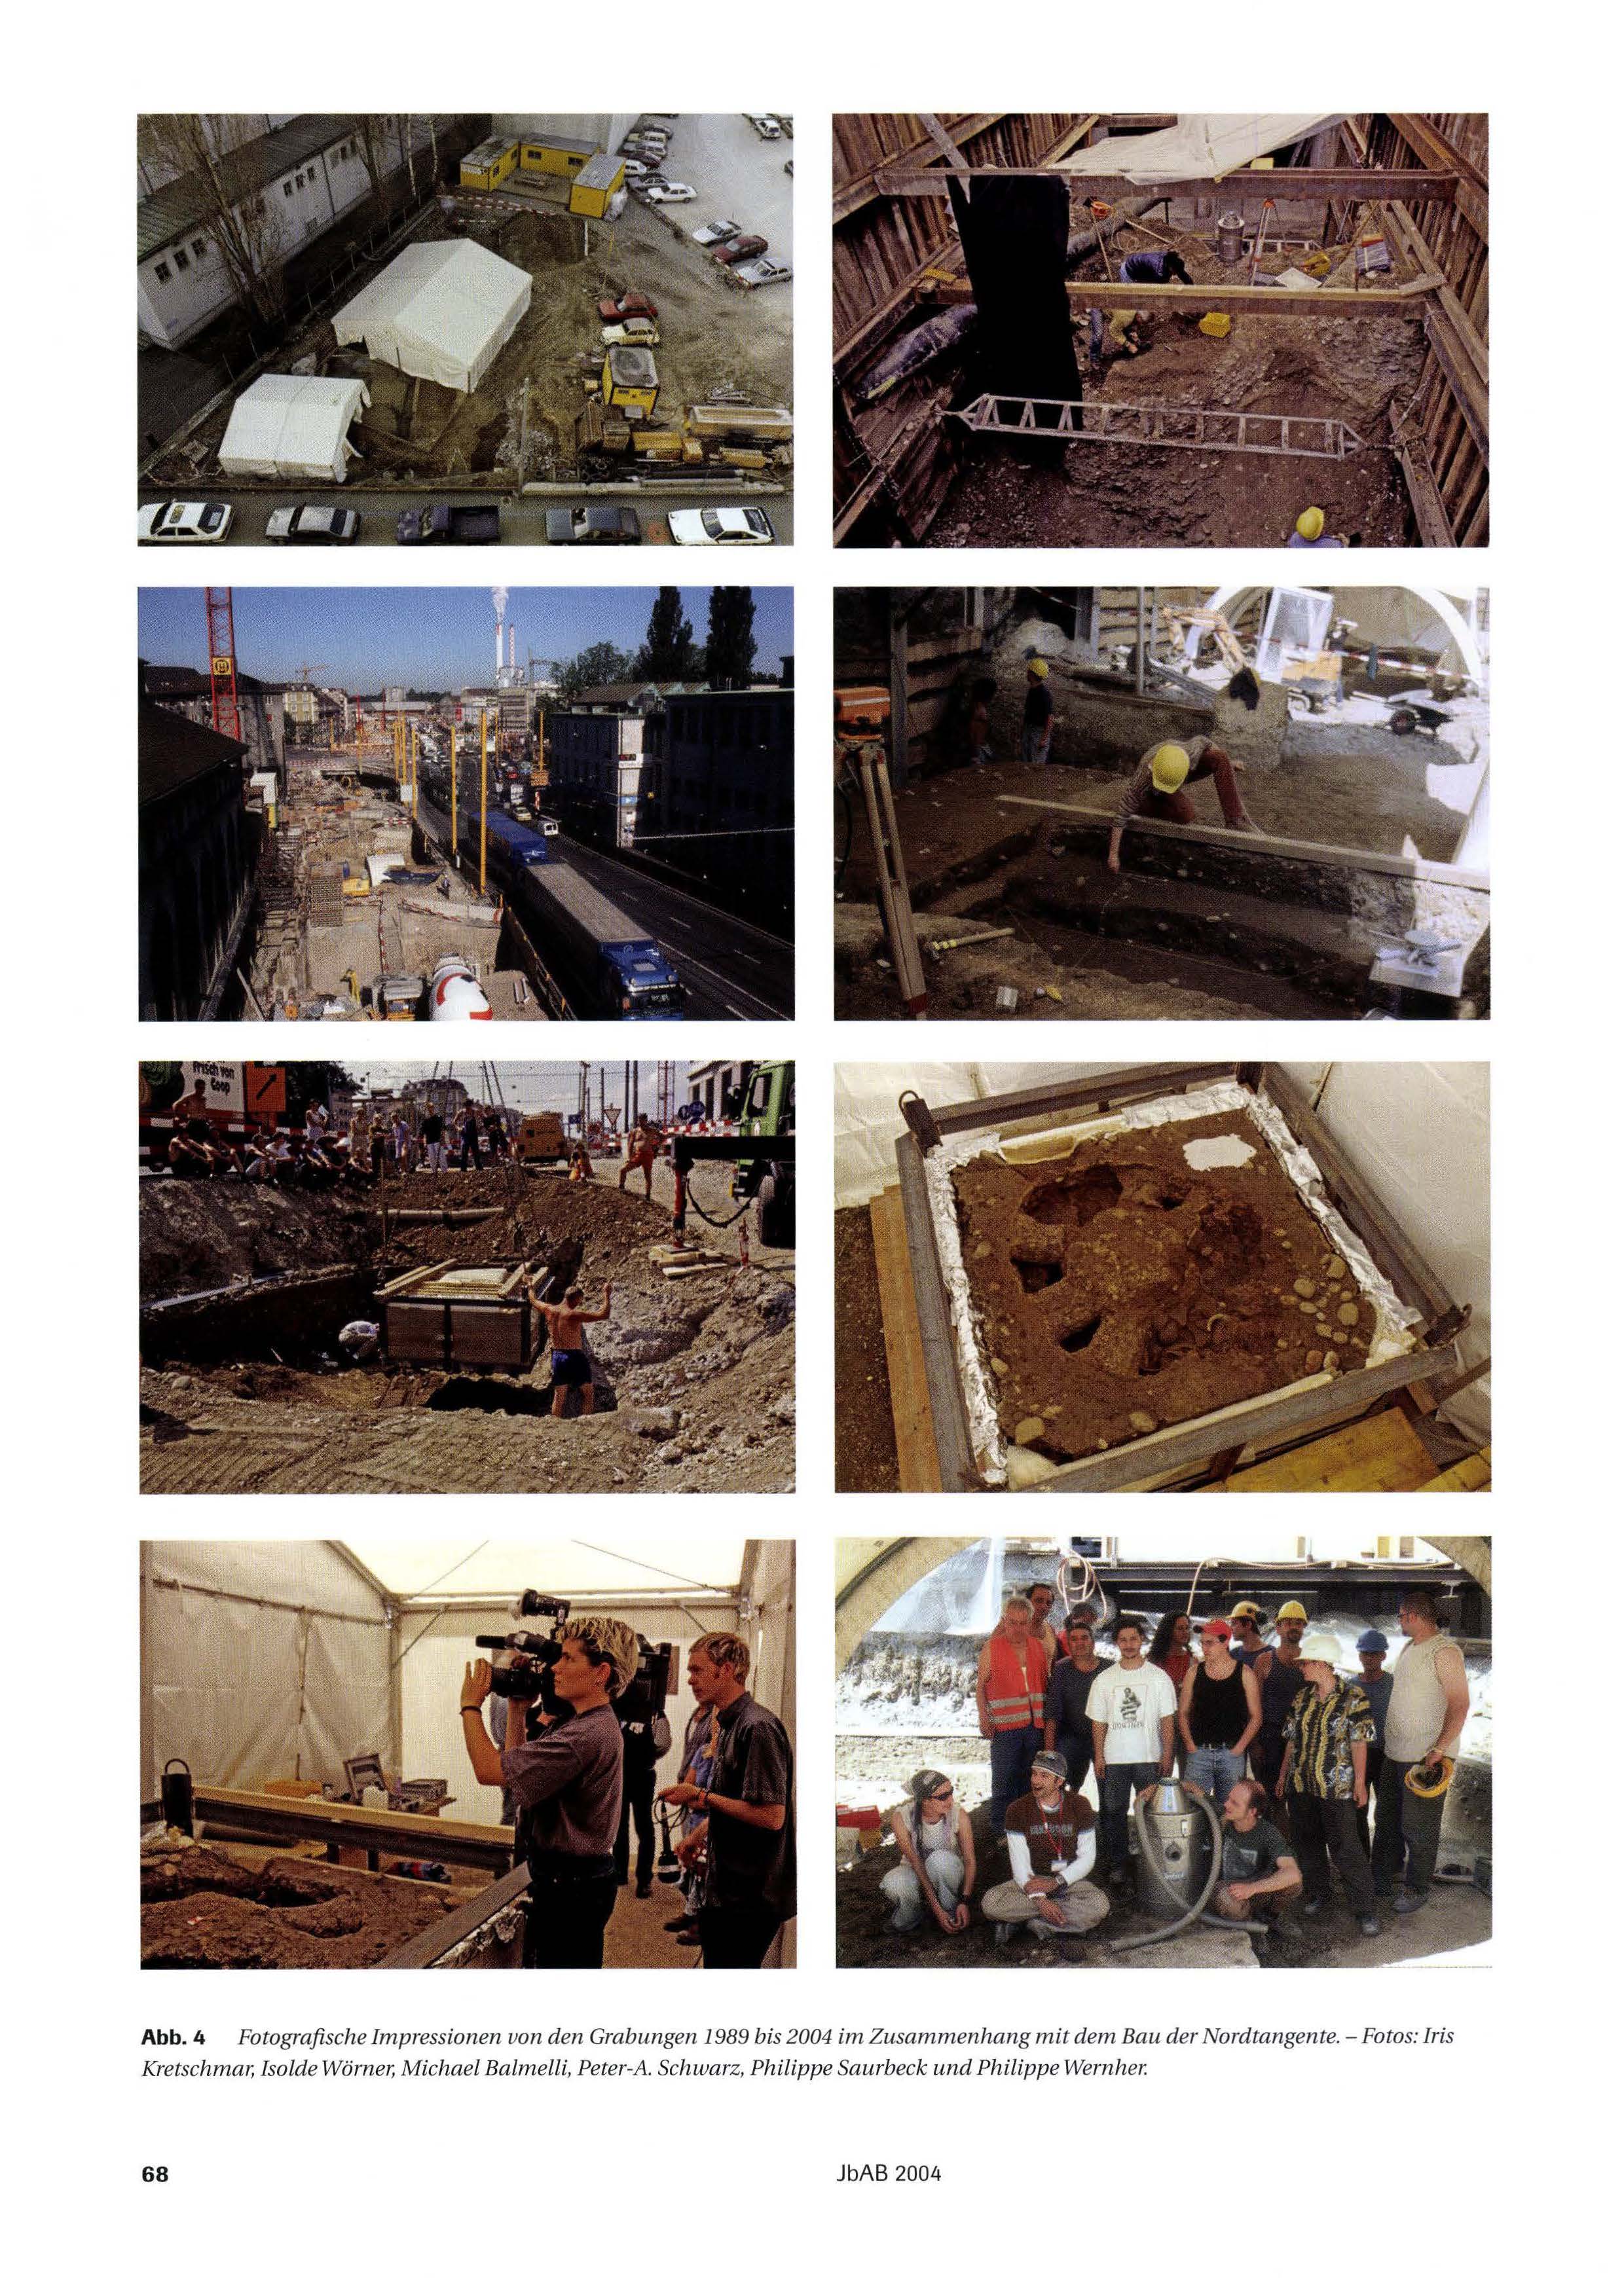 Fotografische Impressionen von den Grabungen 1989 bis 2004 im Zusammenhang mit dem Bau der Nordtangente.